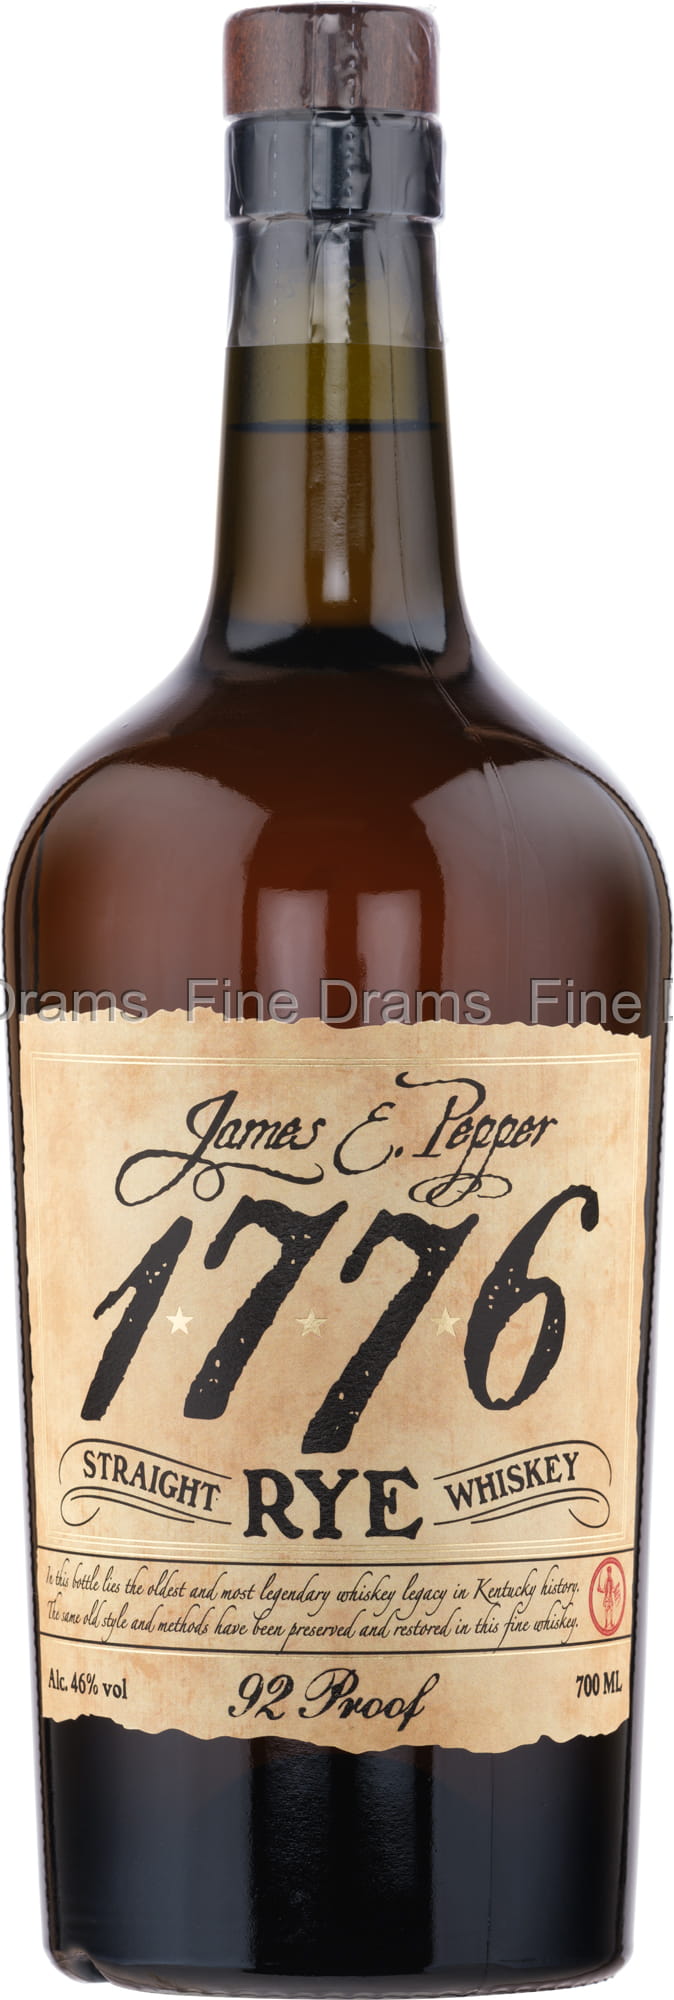 E. Rye Pepper (46%) 1776 James